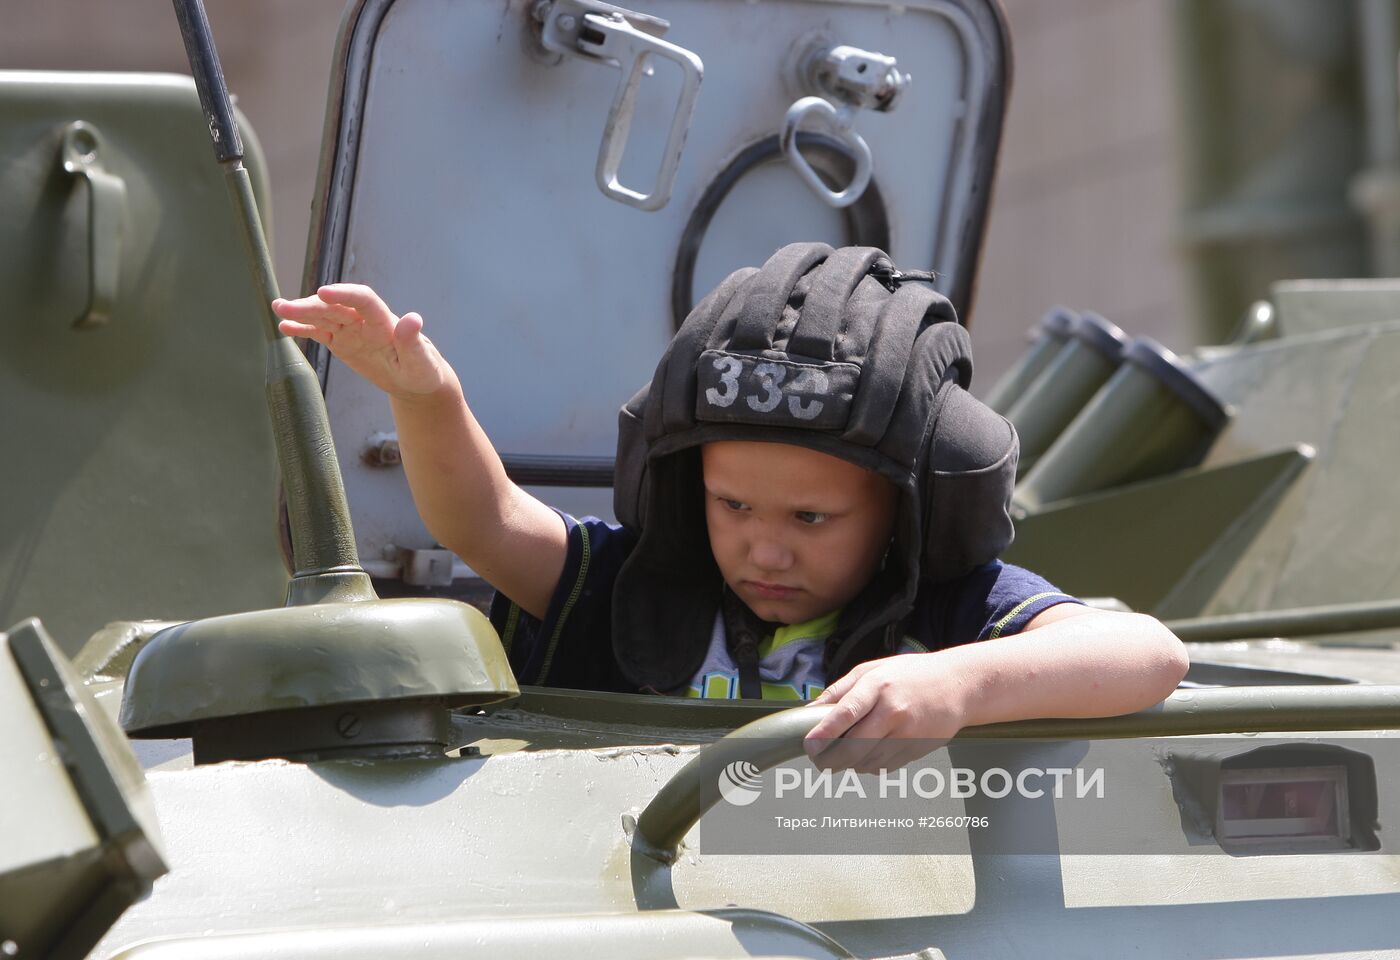 Показ современной военной техники в Крыму